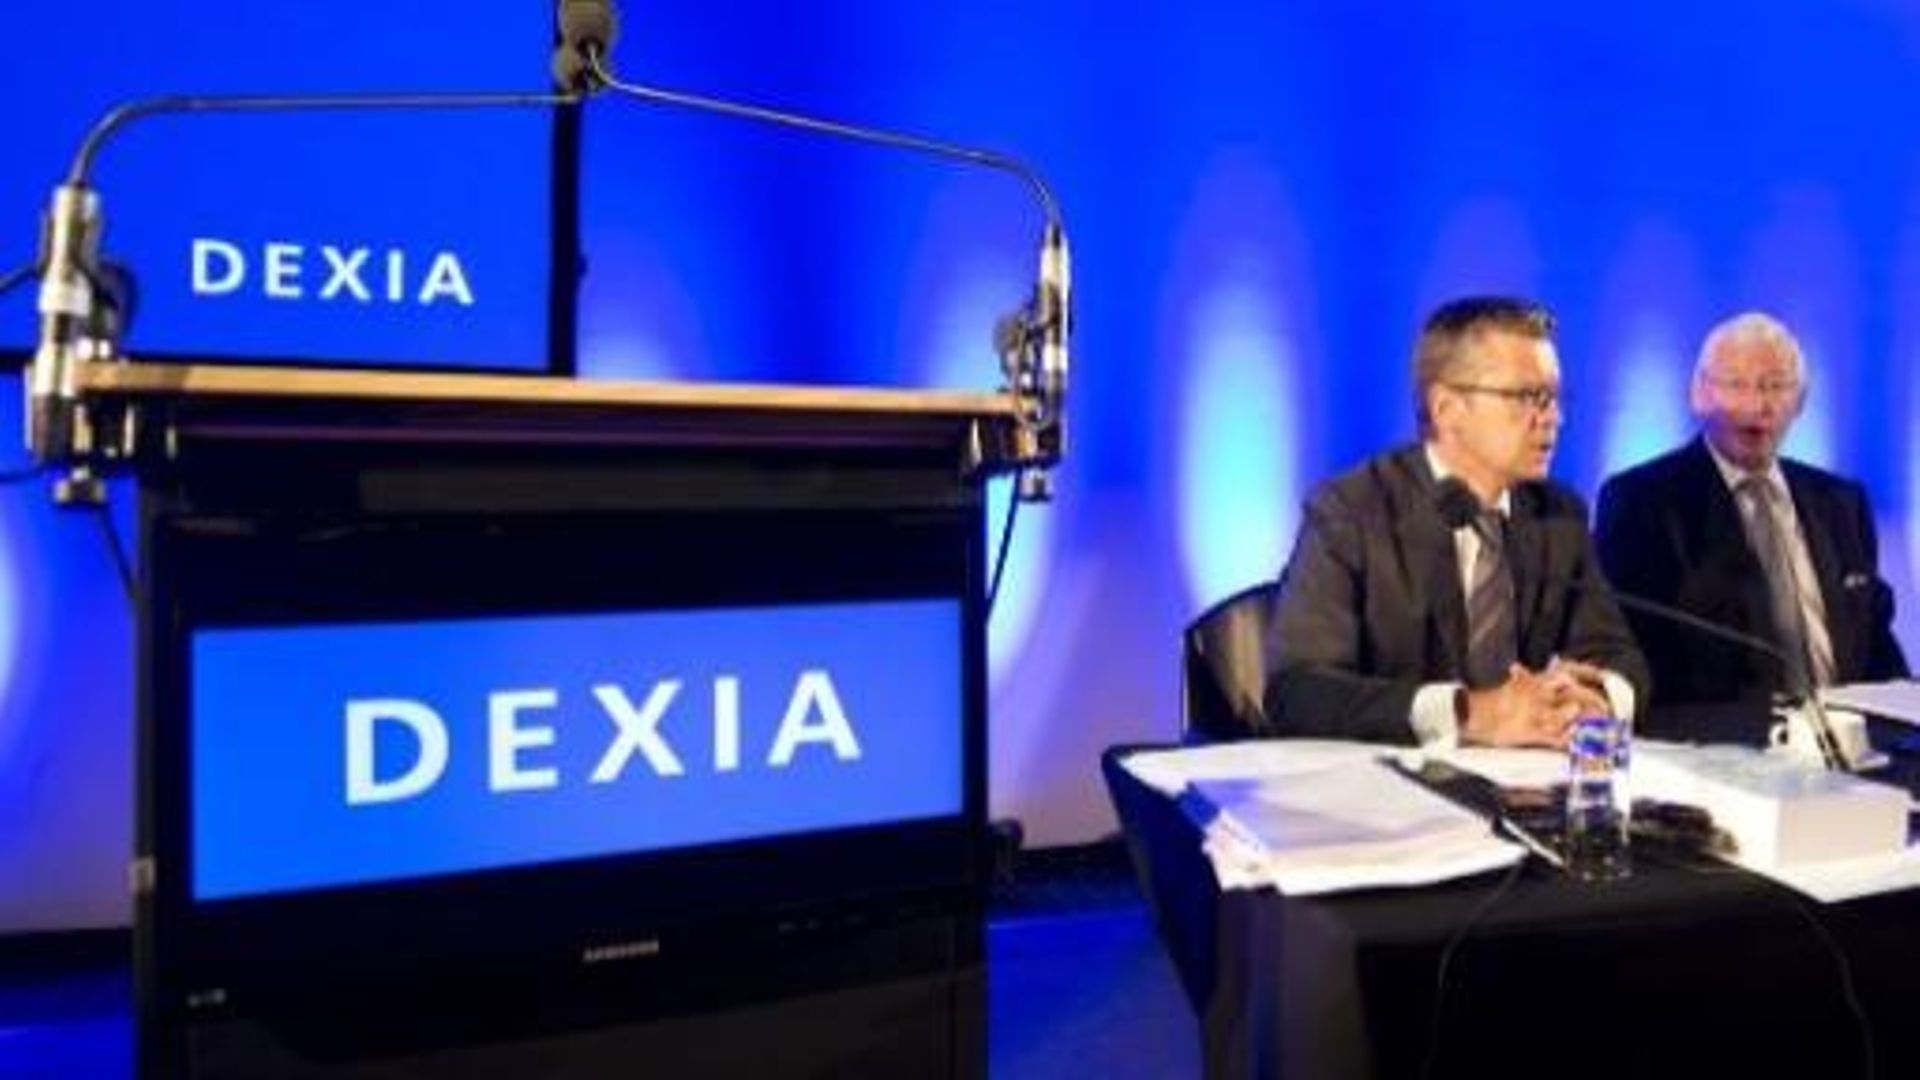 Le management de Dexia, avant la chute, devrait être sanctionné selon la Cour des Comptes française